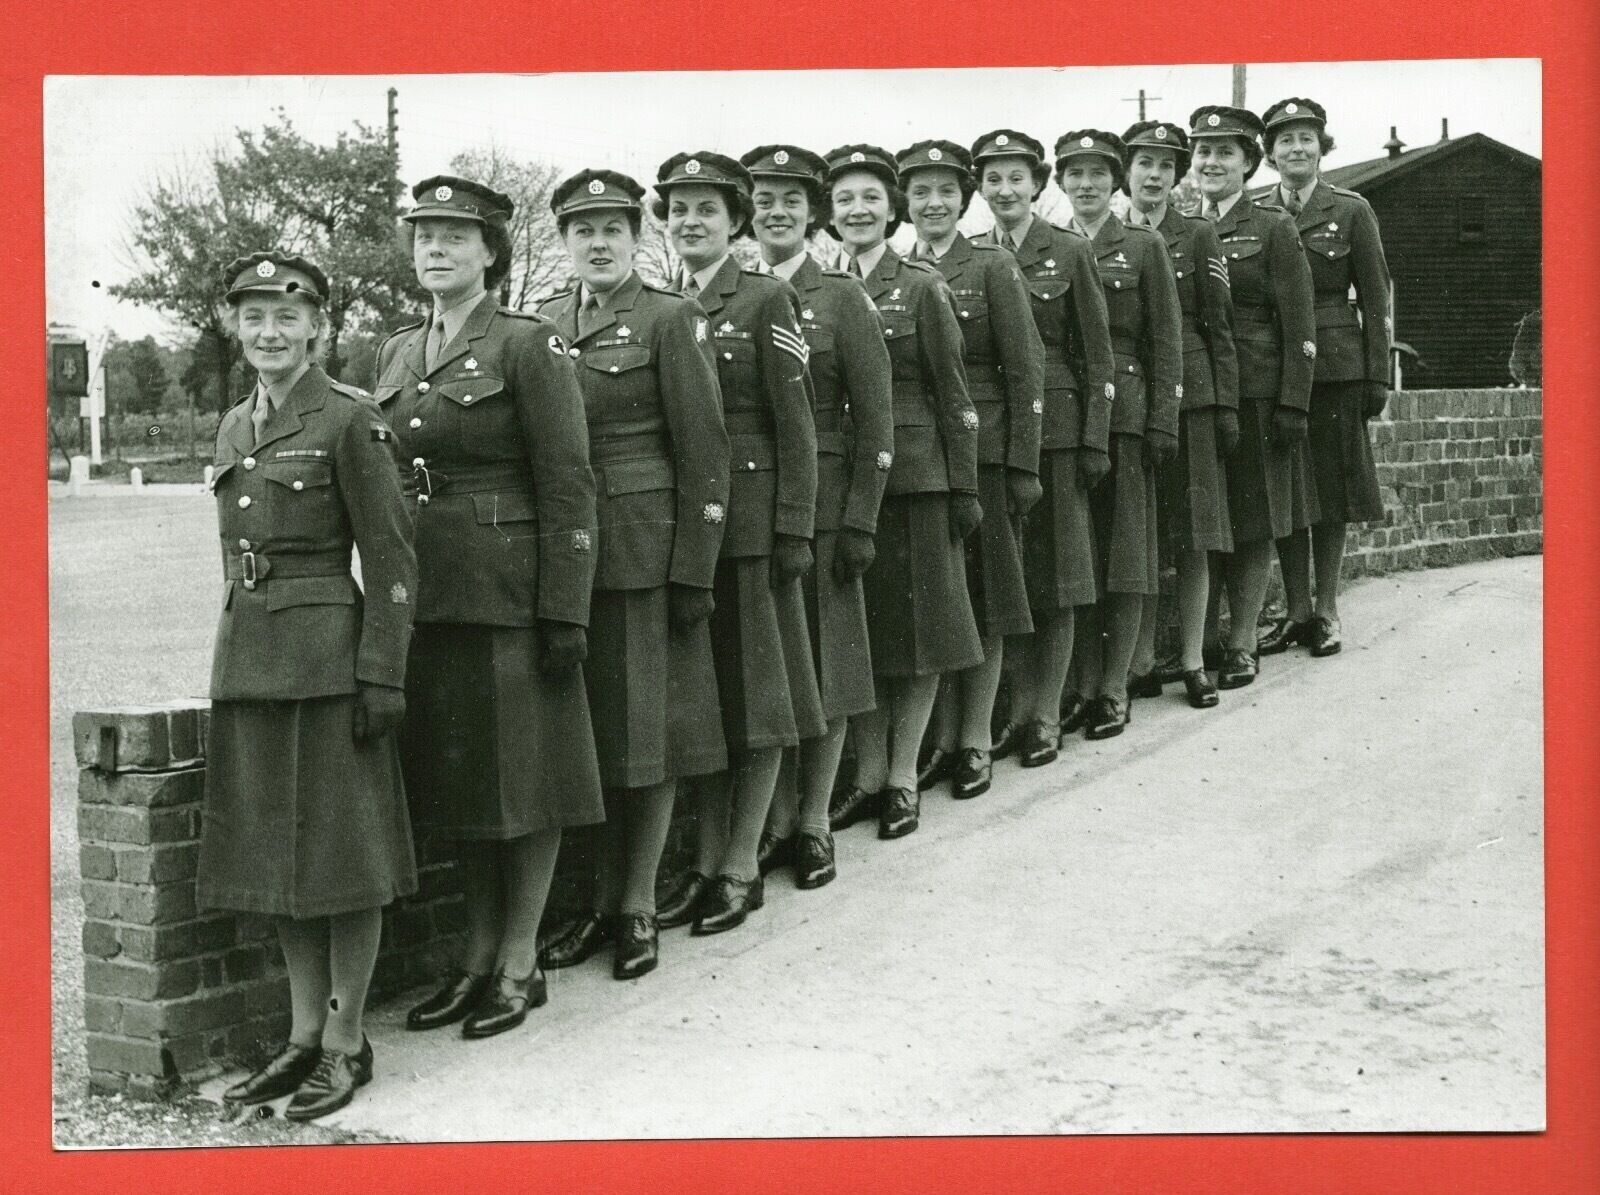 P89-PHOTOGRAPH-MILITARY WOMEN GREAT BRITAIN-LA REVUE-1947